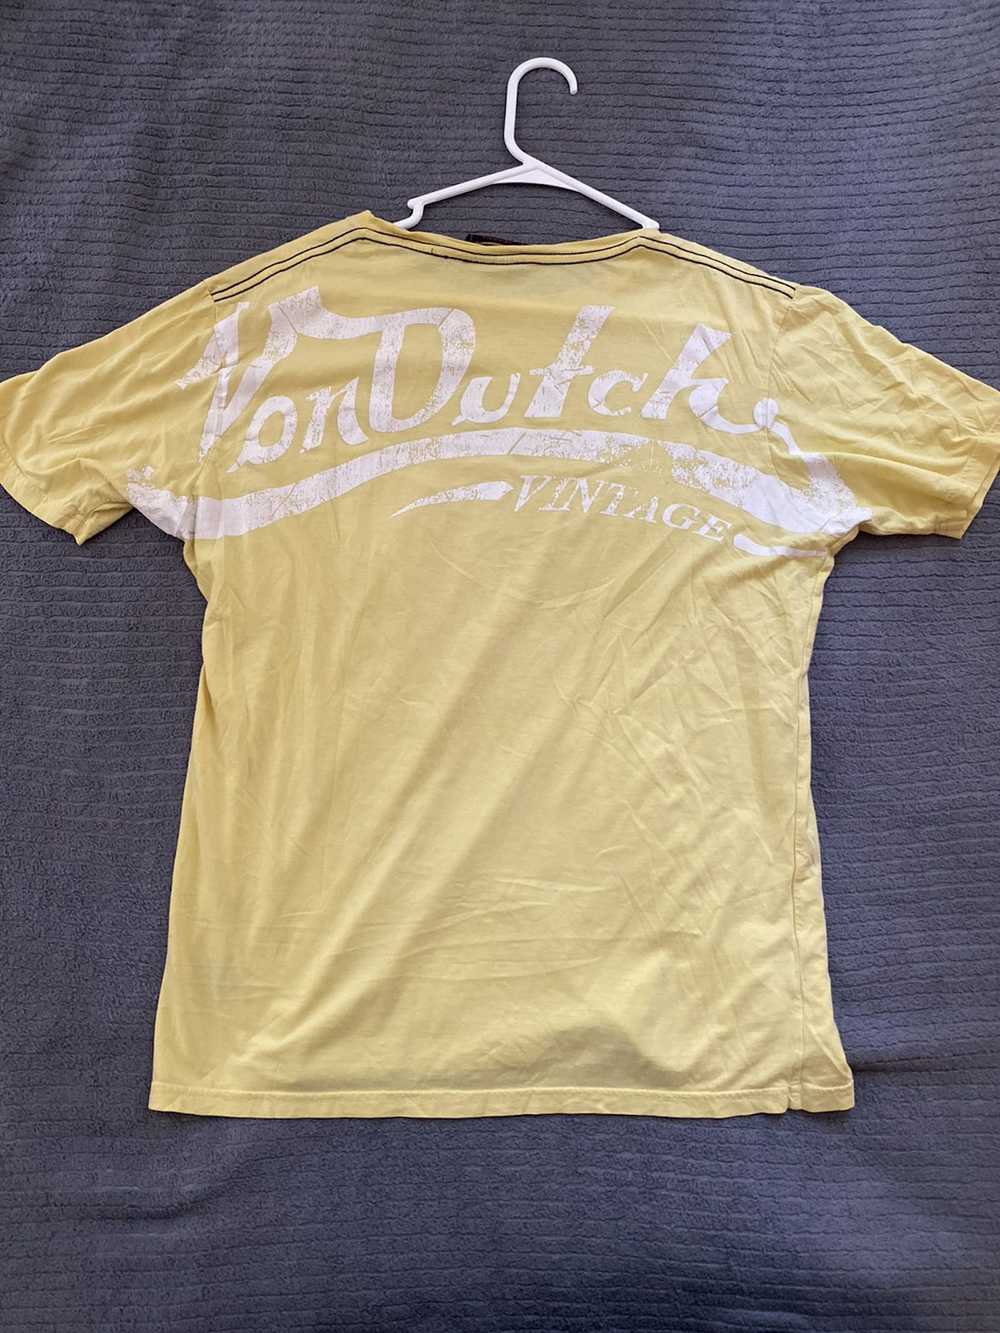 Von Dutch Vintage Von Dutch T Shirt - image 4